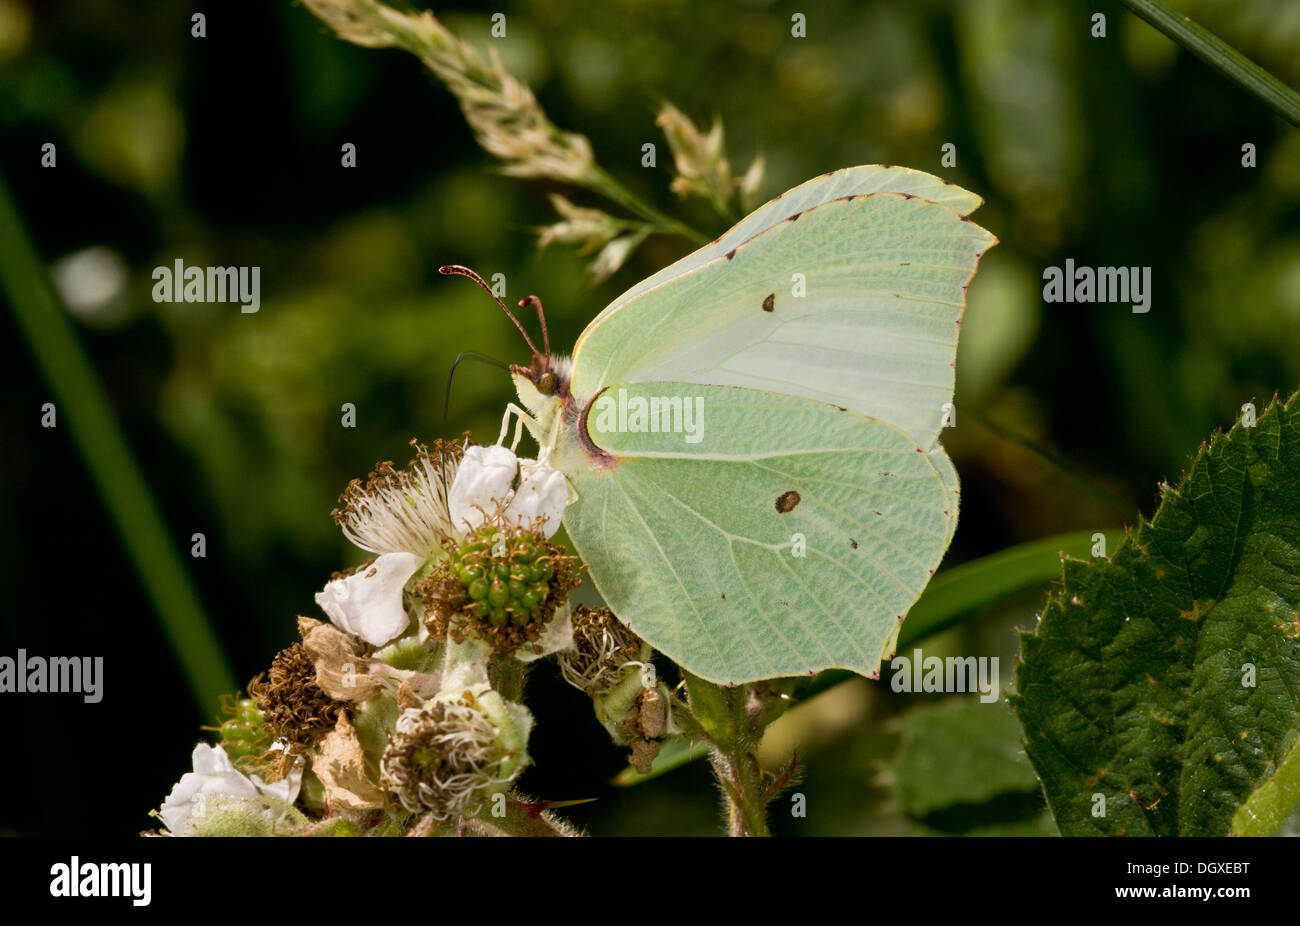 Female Brimstone butterfly, Gonepteryx rhamni feeding on bramble flowers. Stock Photo